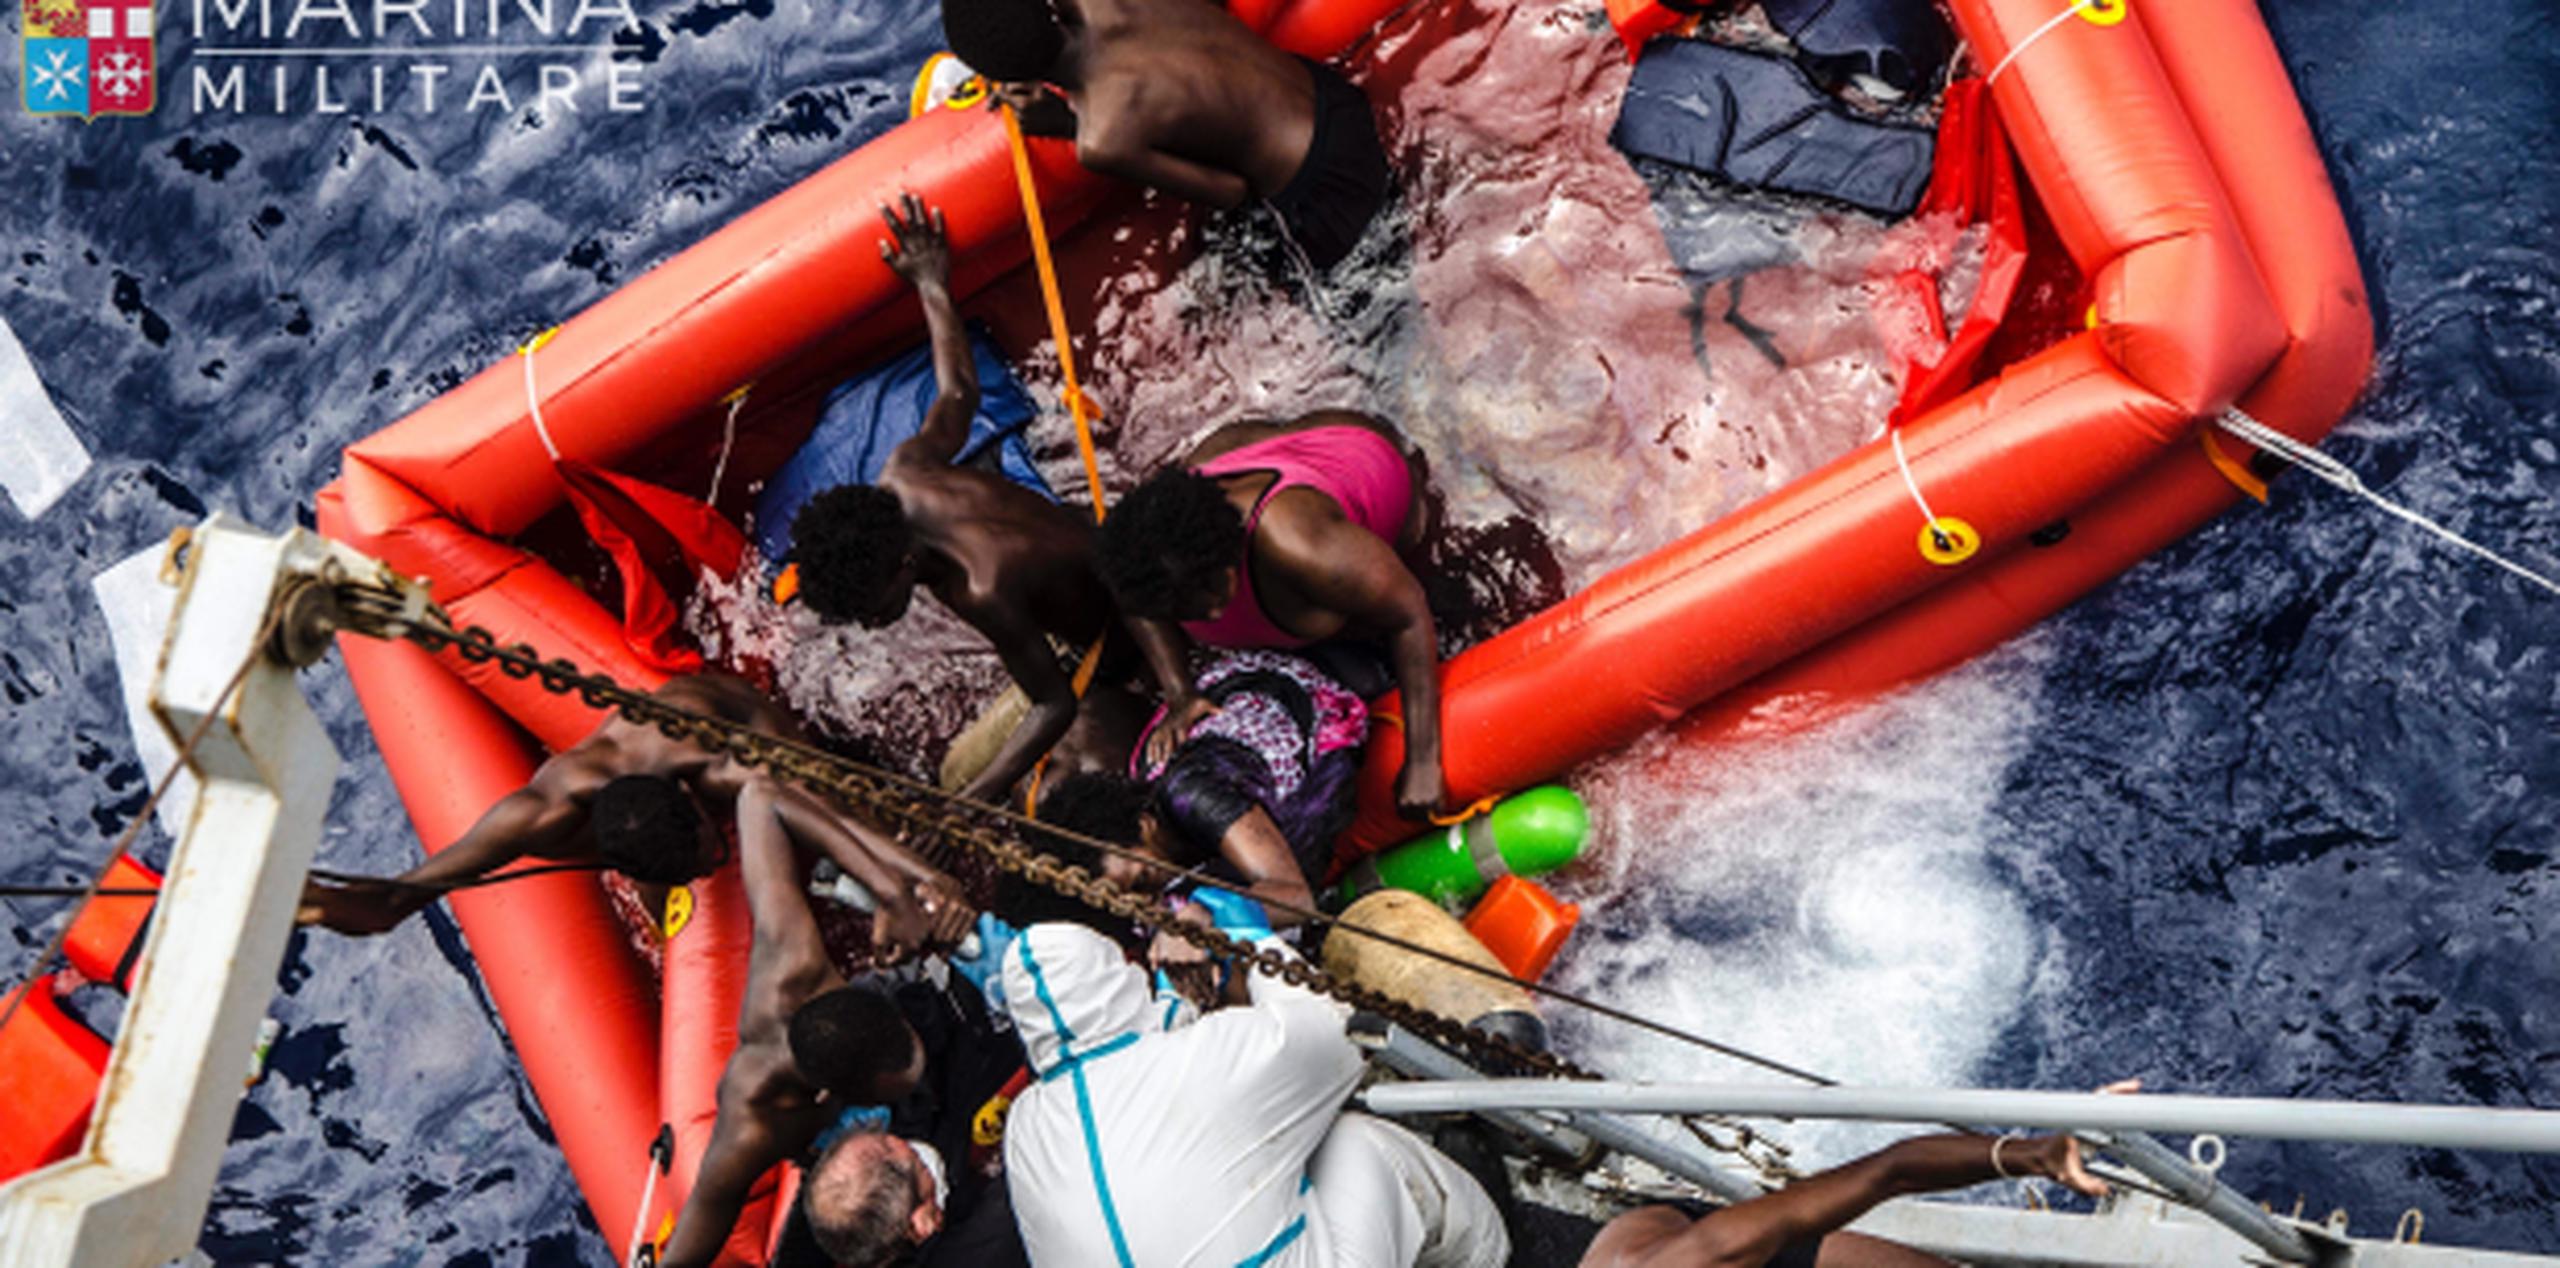 Rescatistas ayudan a varios migrantes a abordar un navío de la Marina Italiana luego que el bote en que intentaban llegar a Europa naufragara frente a las costas de Libia. (Raffaele Martino/Marina Militare via AP Photo)
